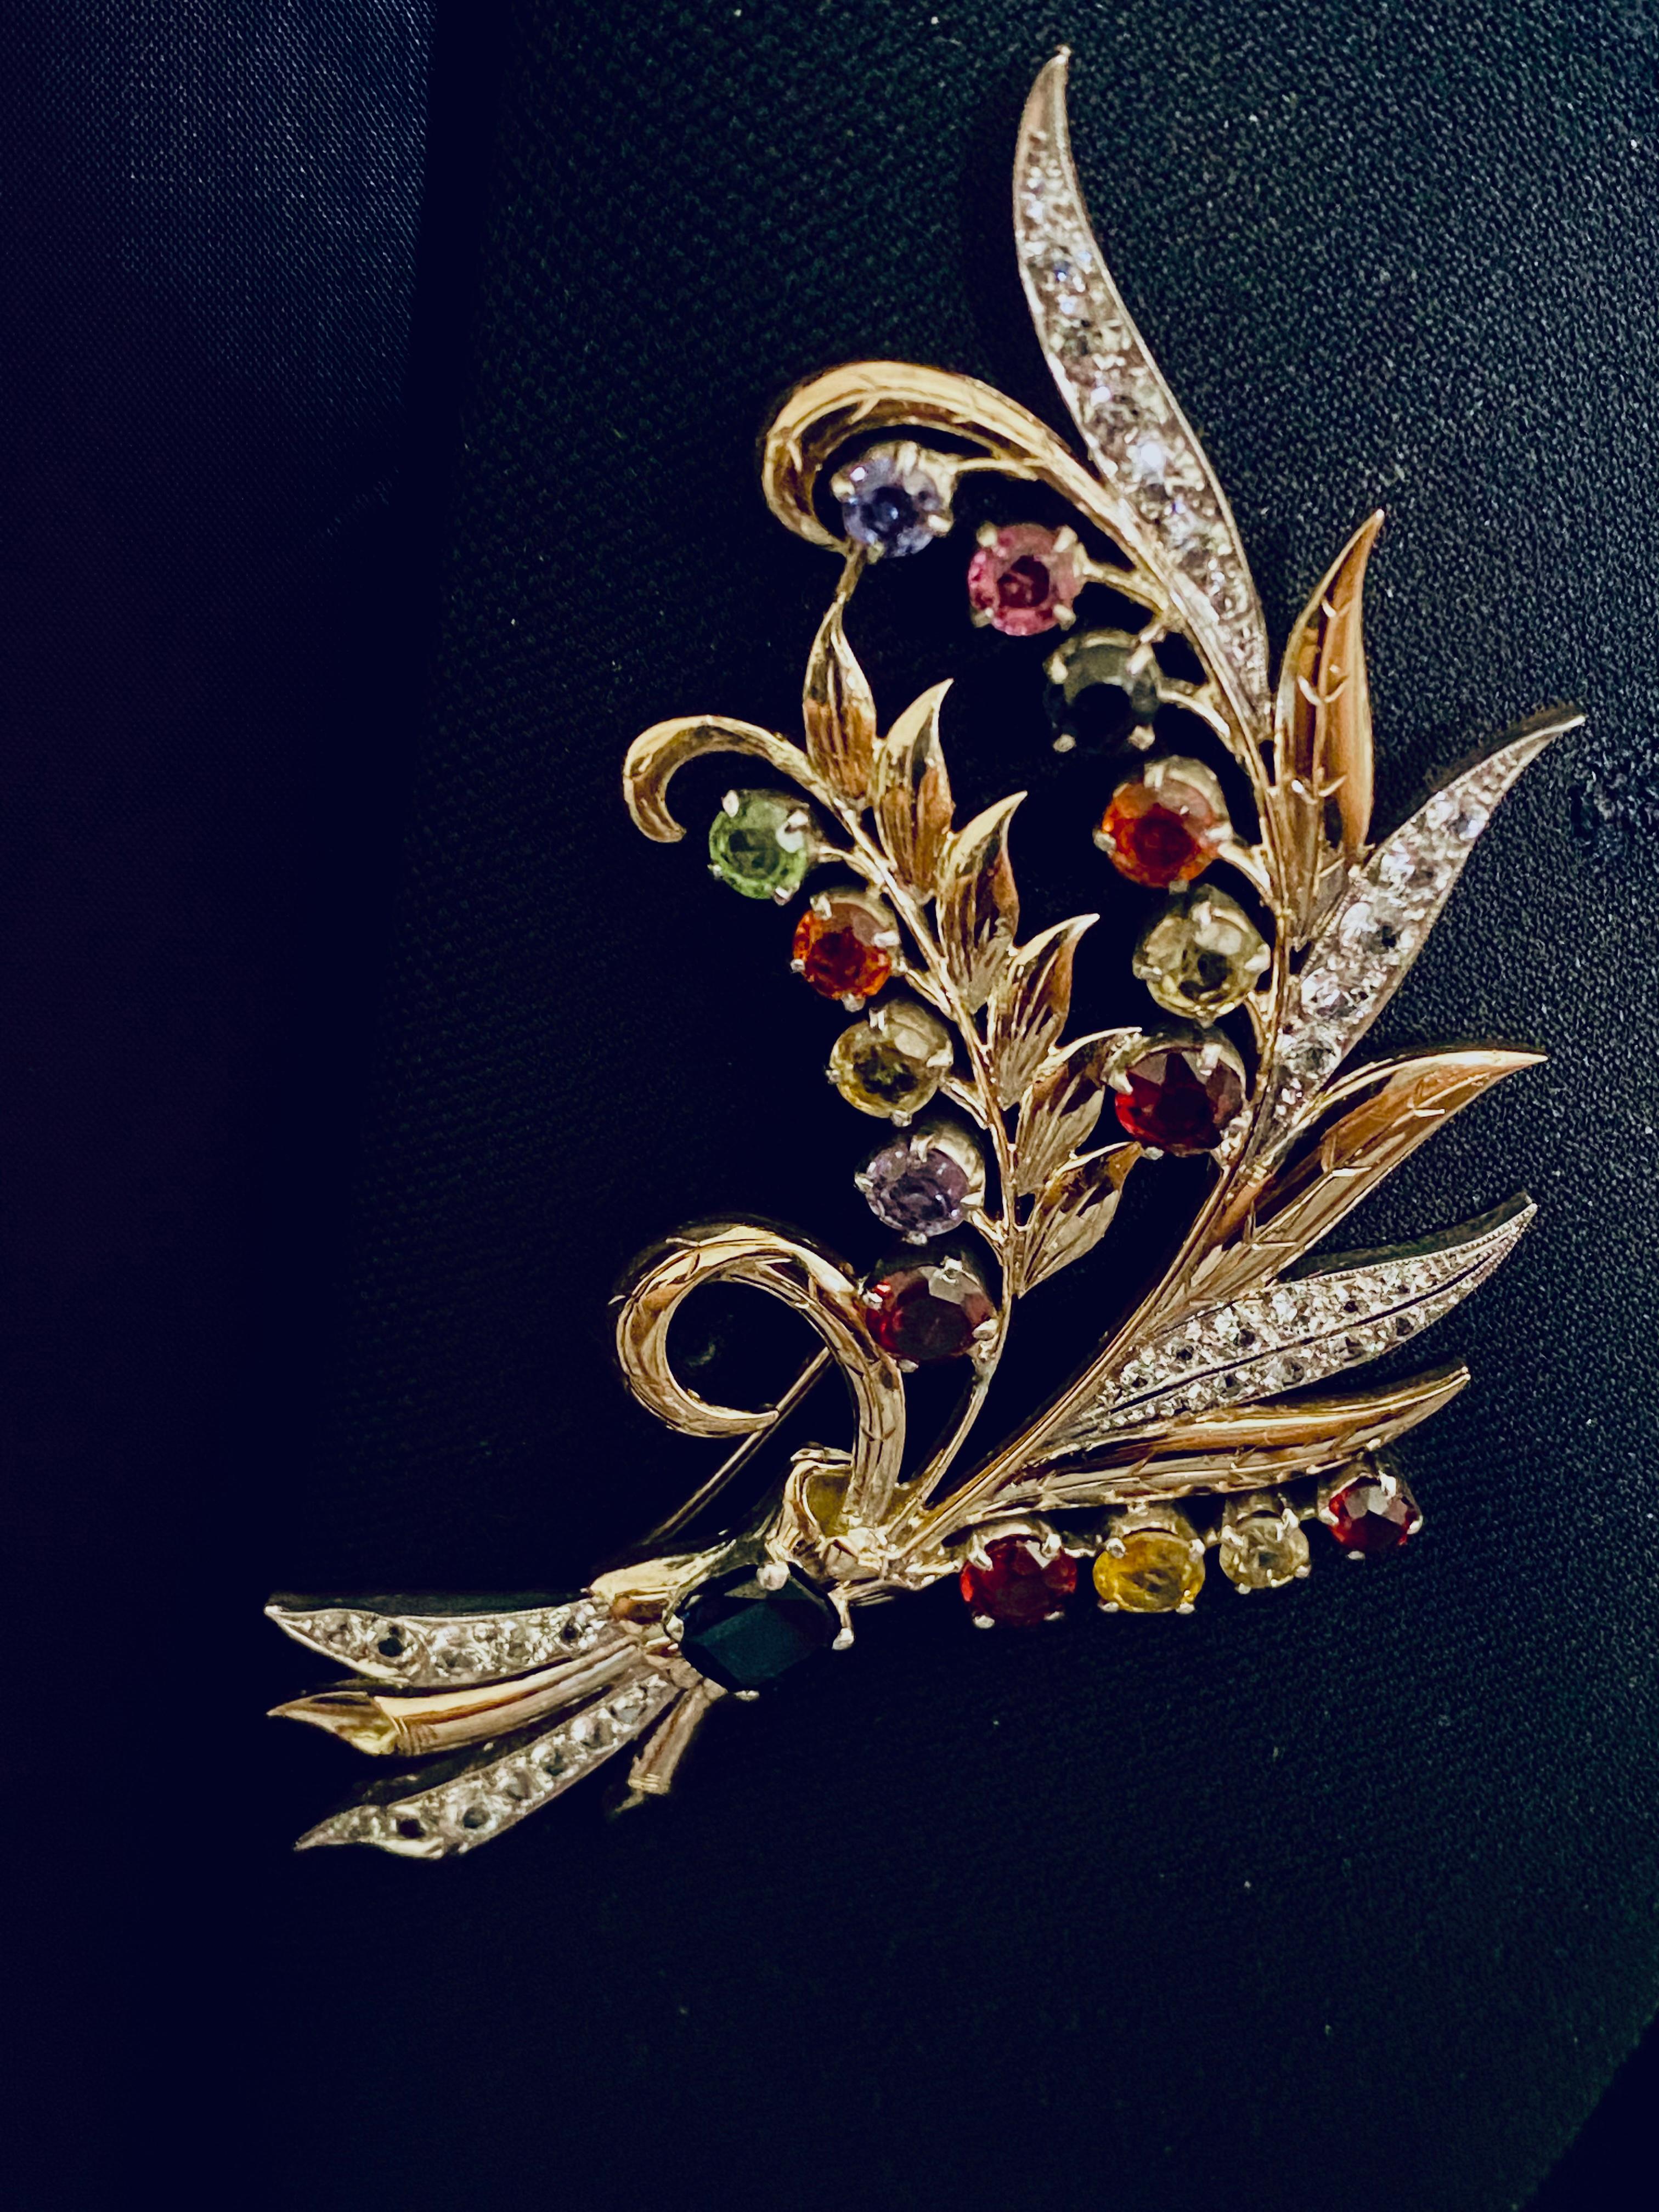 gemstone encrusted brooch